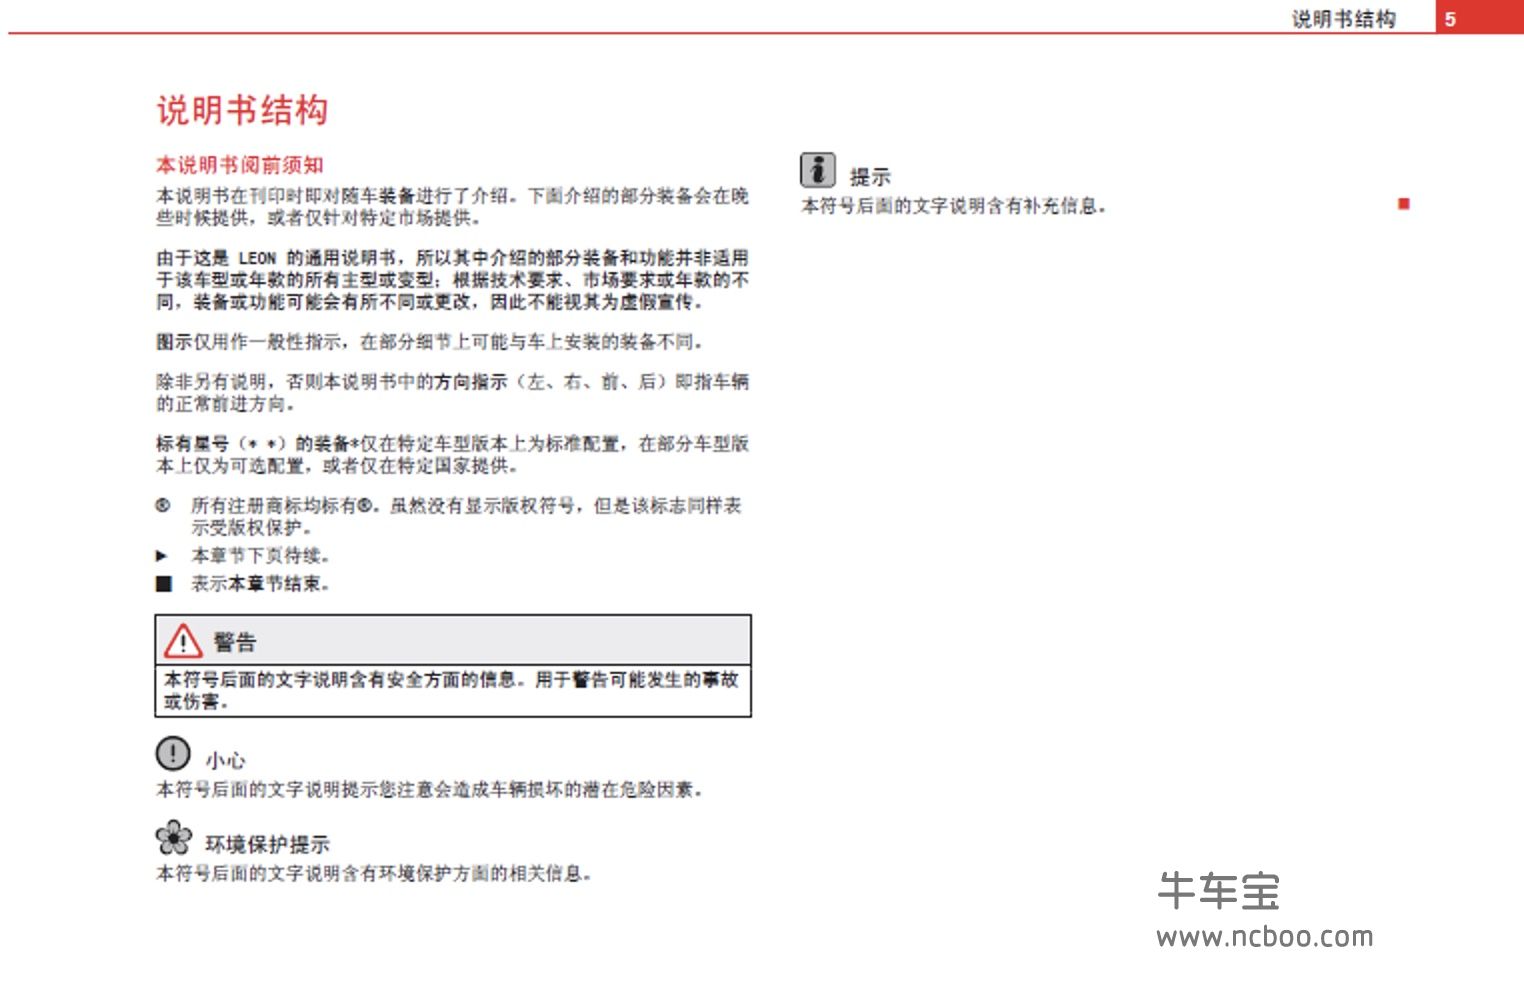 2012款西雅特LEON用户手册产品使用说明书pdf电子版下载